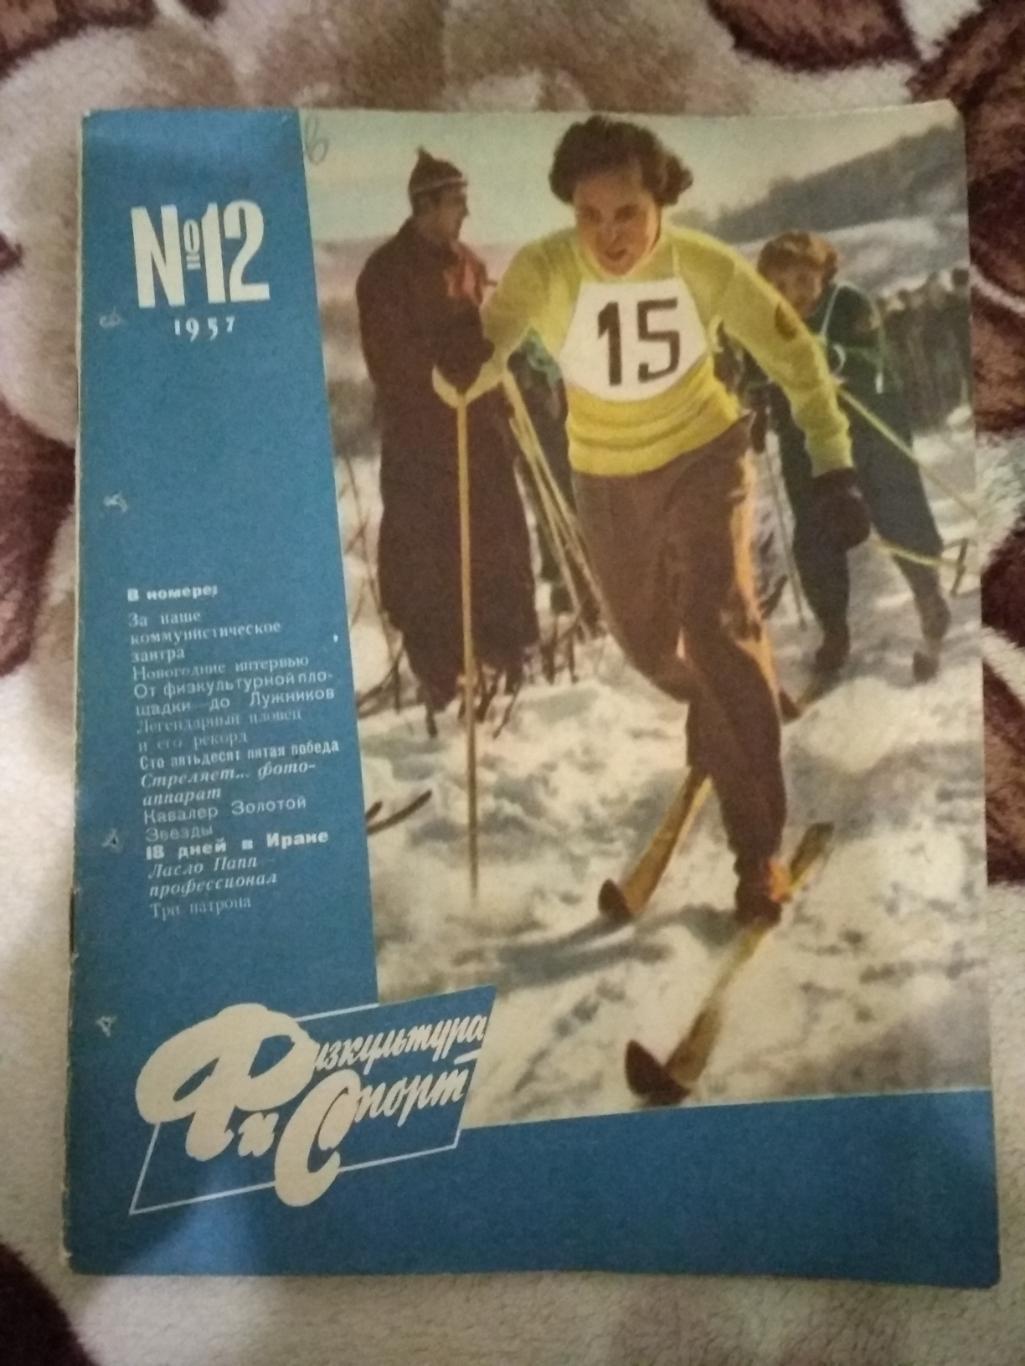 Журнал.Физкультура и спорт № 12 1957 г. (ФиС).